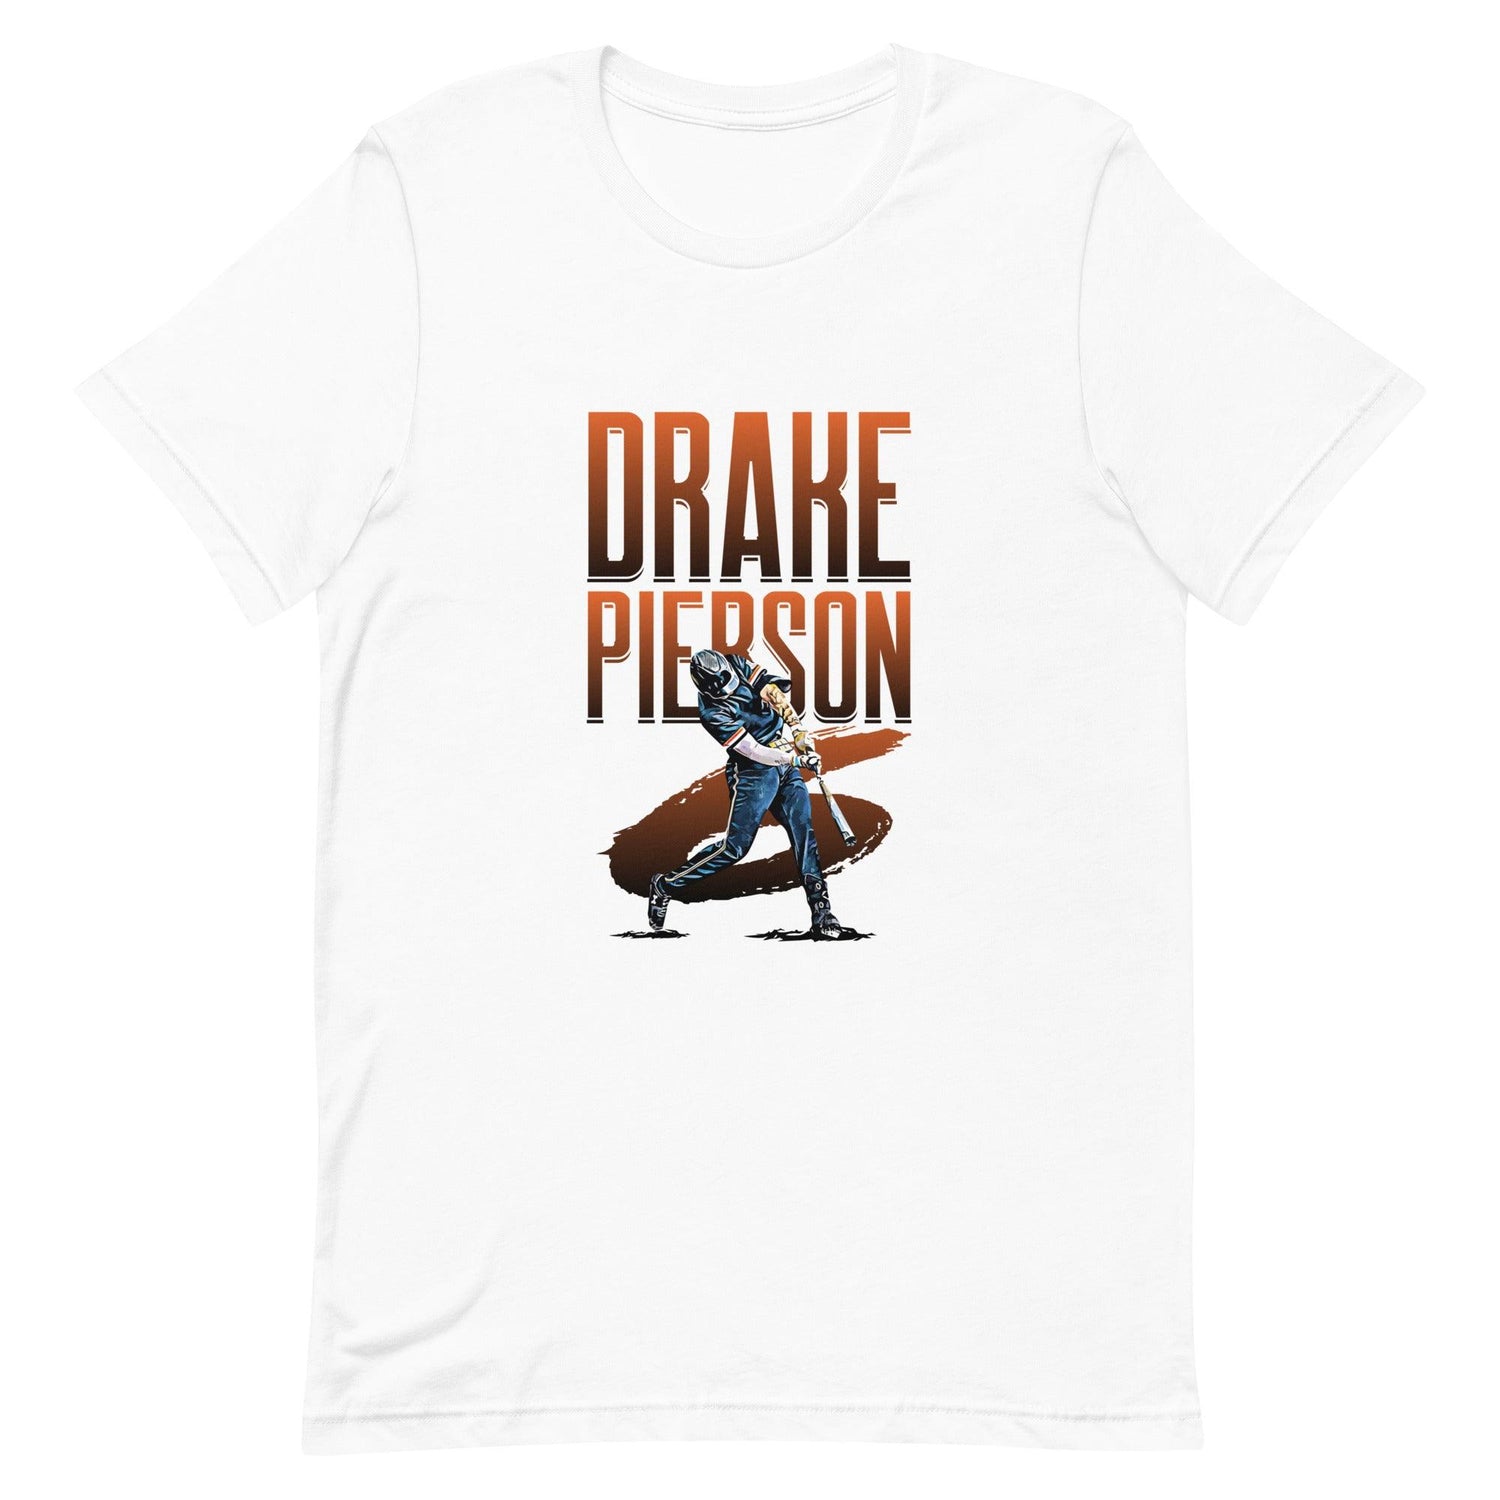 Drake Pierson "Gametime" t-shirt - Fan Arch